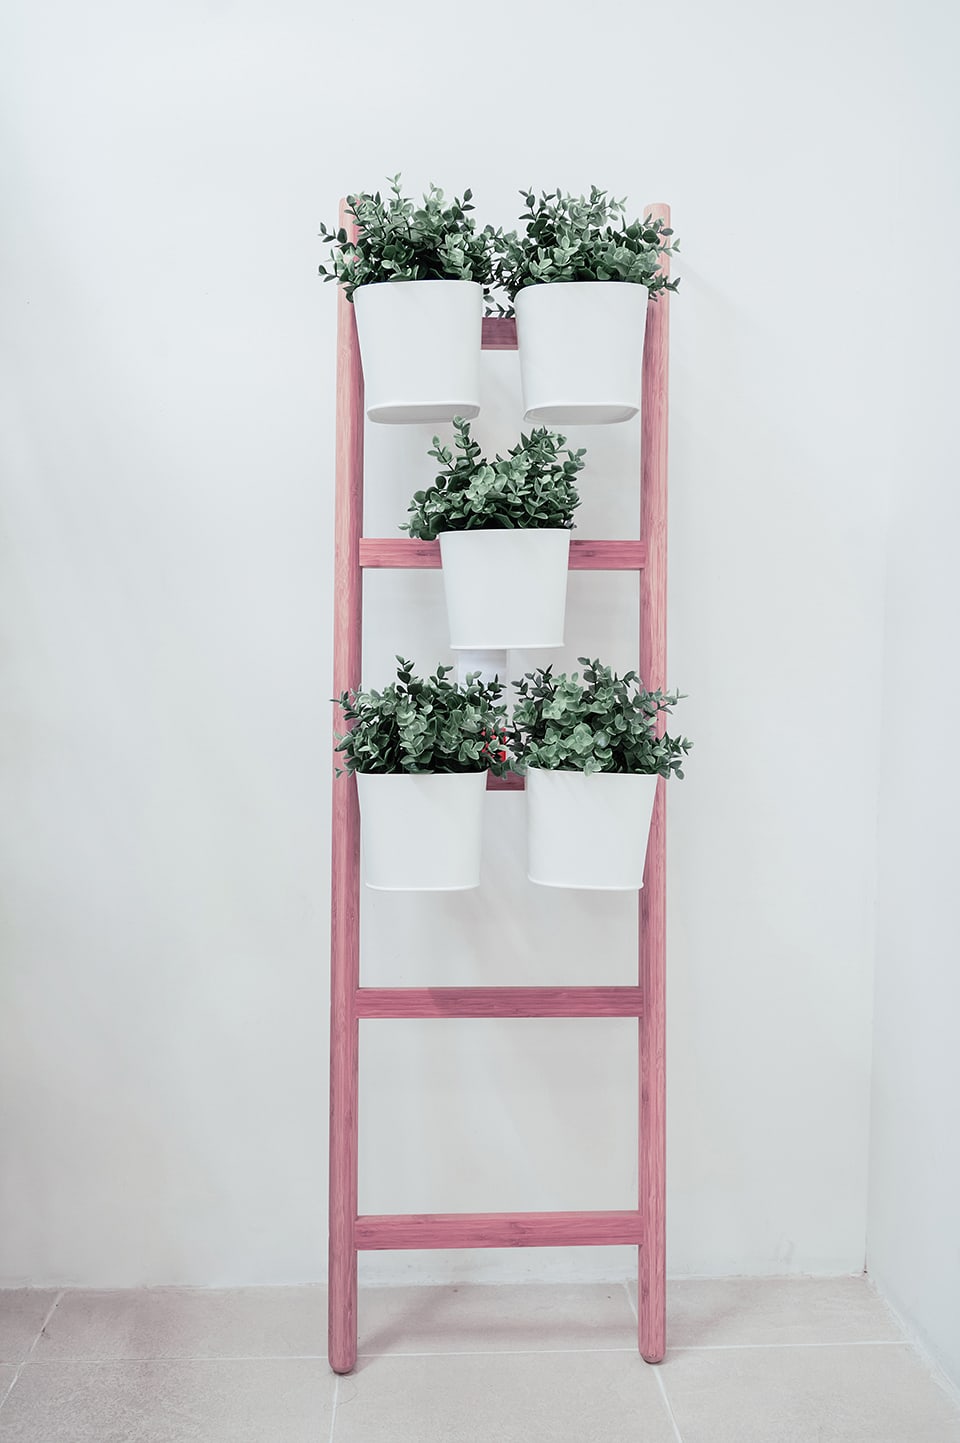 Una scala recuperata e verniciata di rosa, fissata al muro, diventa un porta piante, con piccoli vasi bianchi agganciati ai pioli